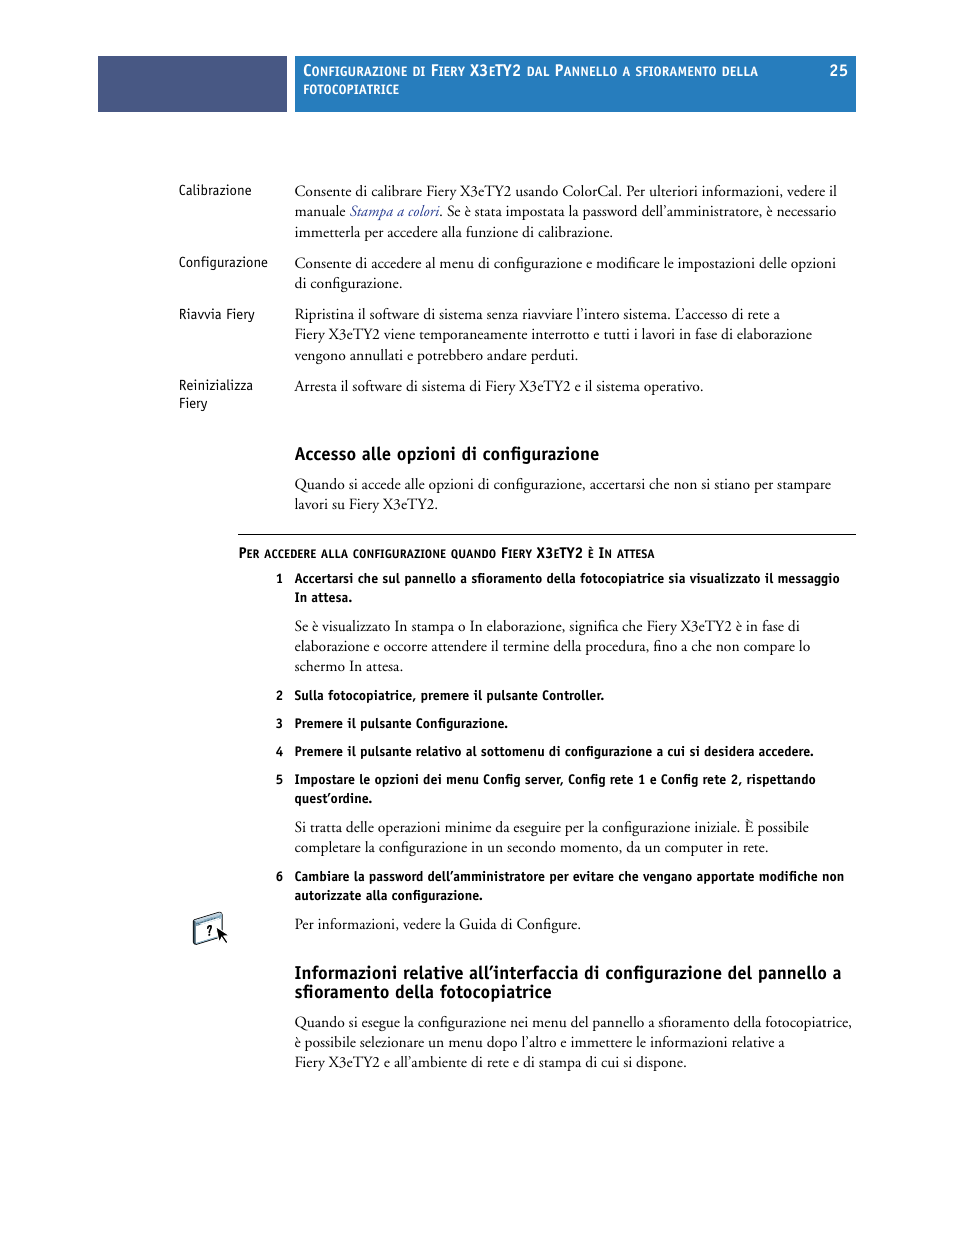 Accesso alle opzioni di configurazione | Konica Minolta bizhub PRO C6500P Manuale d'uso | Pagina 25 / 54